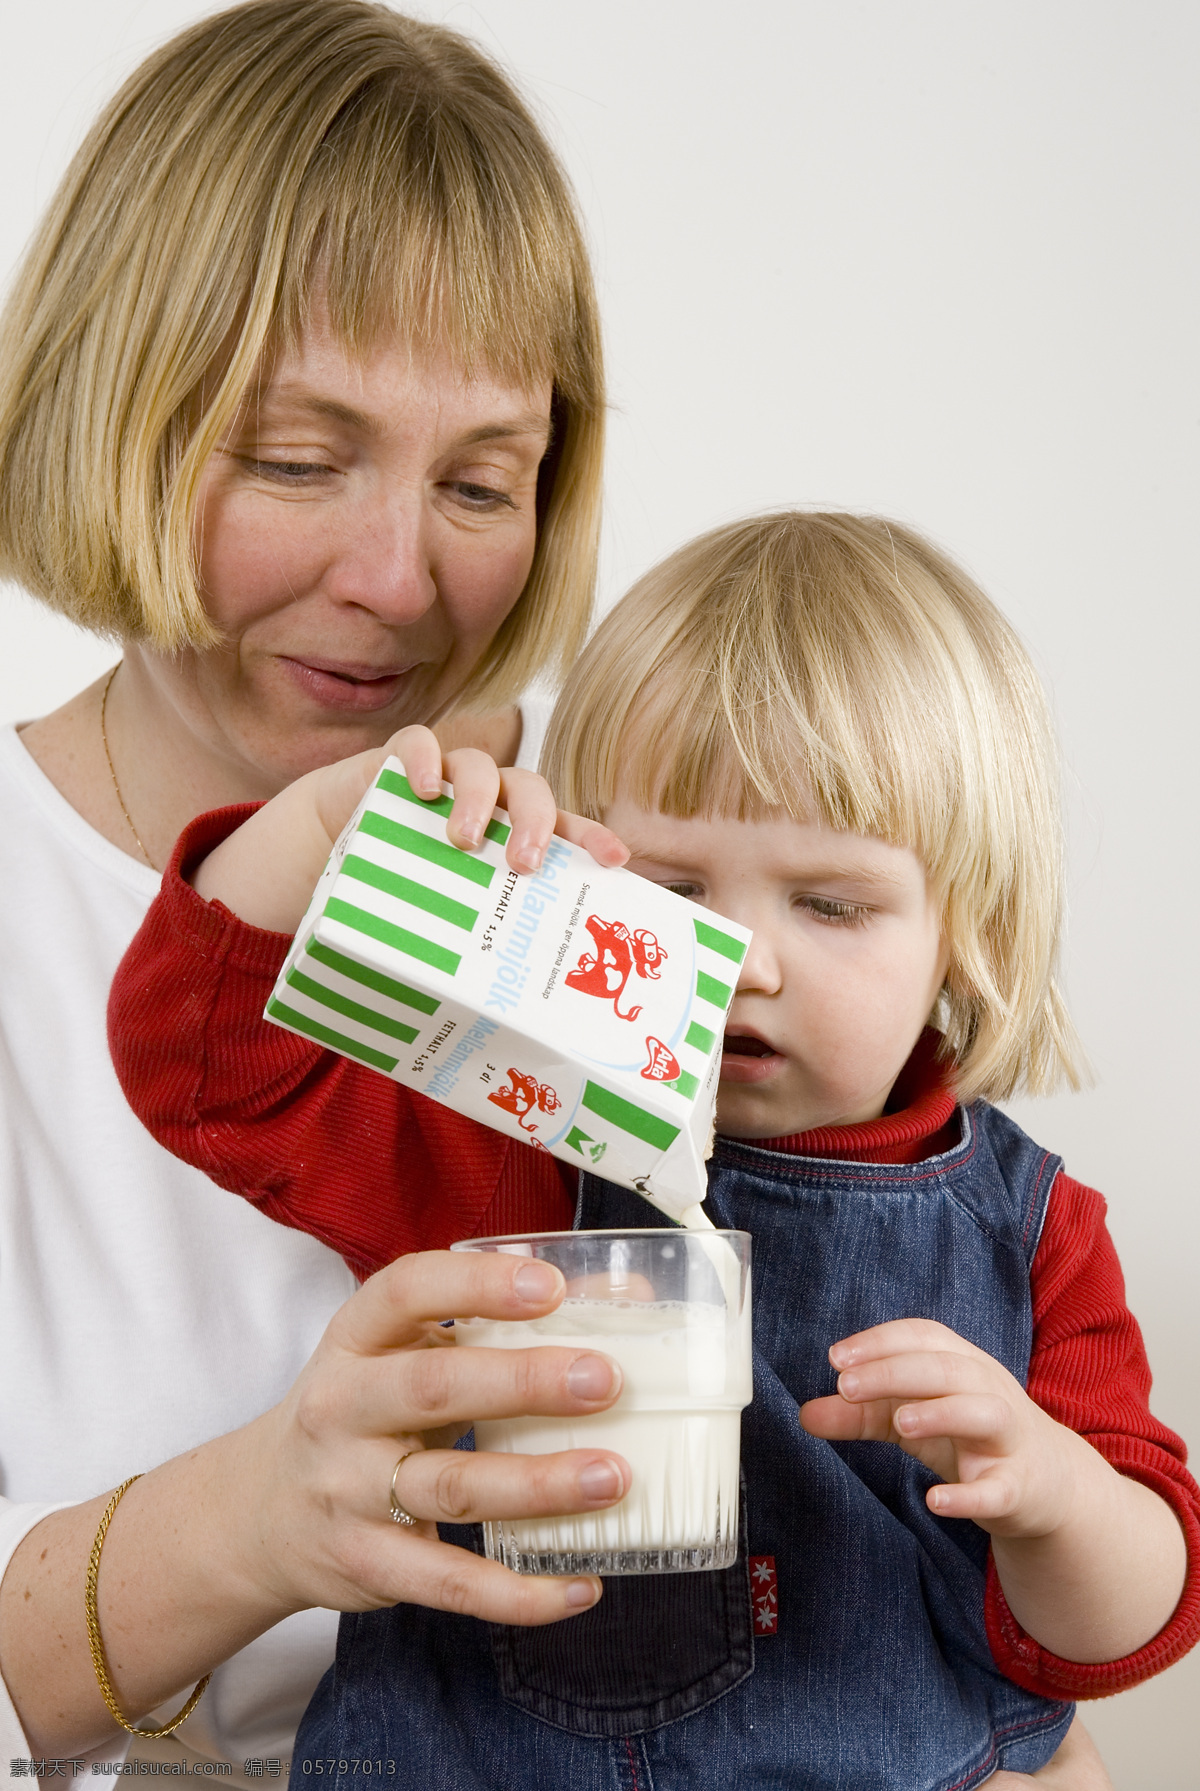 帮助 杯子 母亲 牛奶 人物摄影 人物图库 小朋友 自己 倒 奶 给自己倒奶 矢量图 日常生活